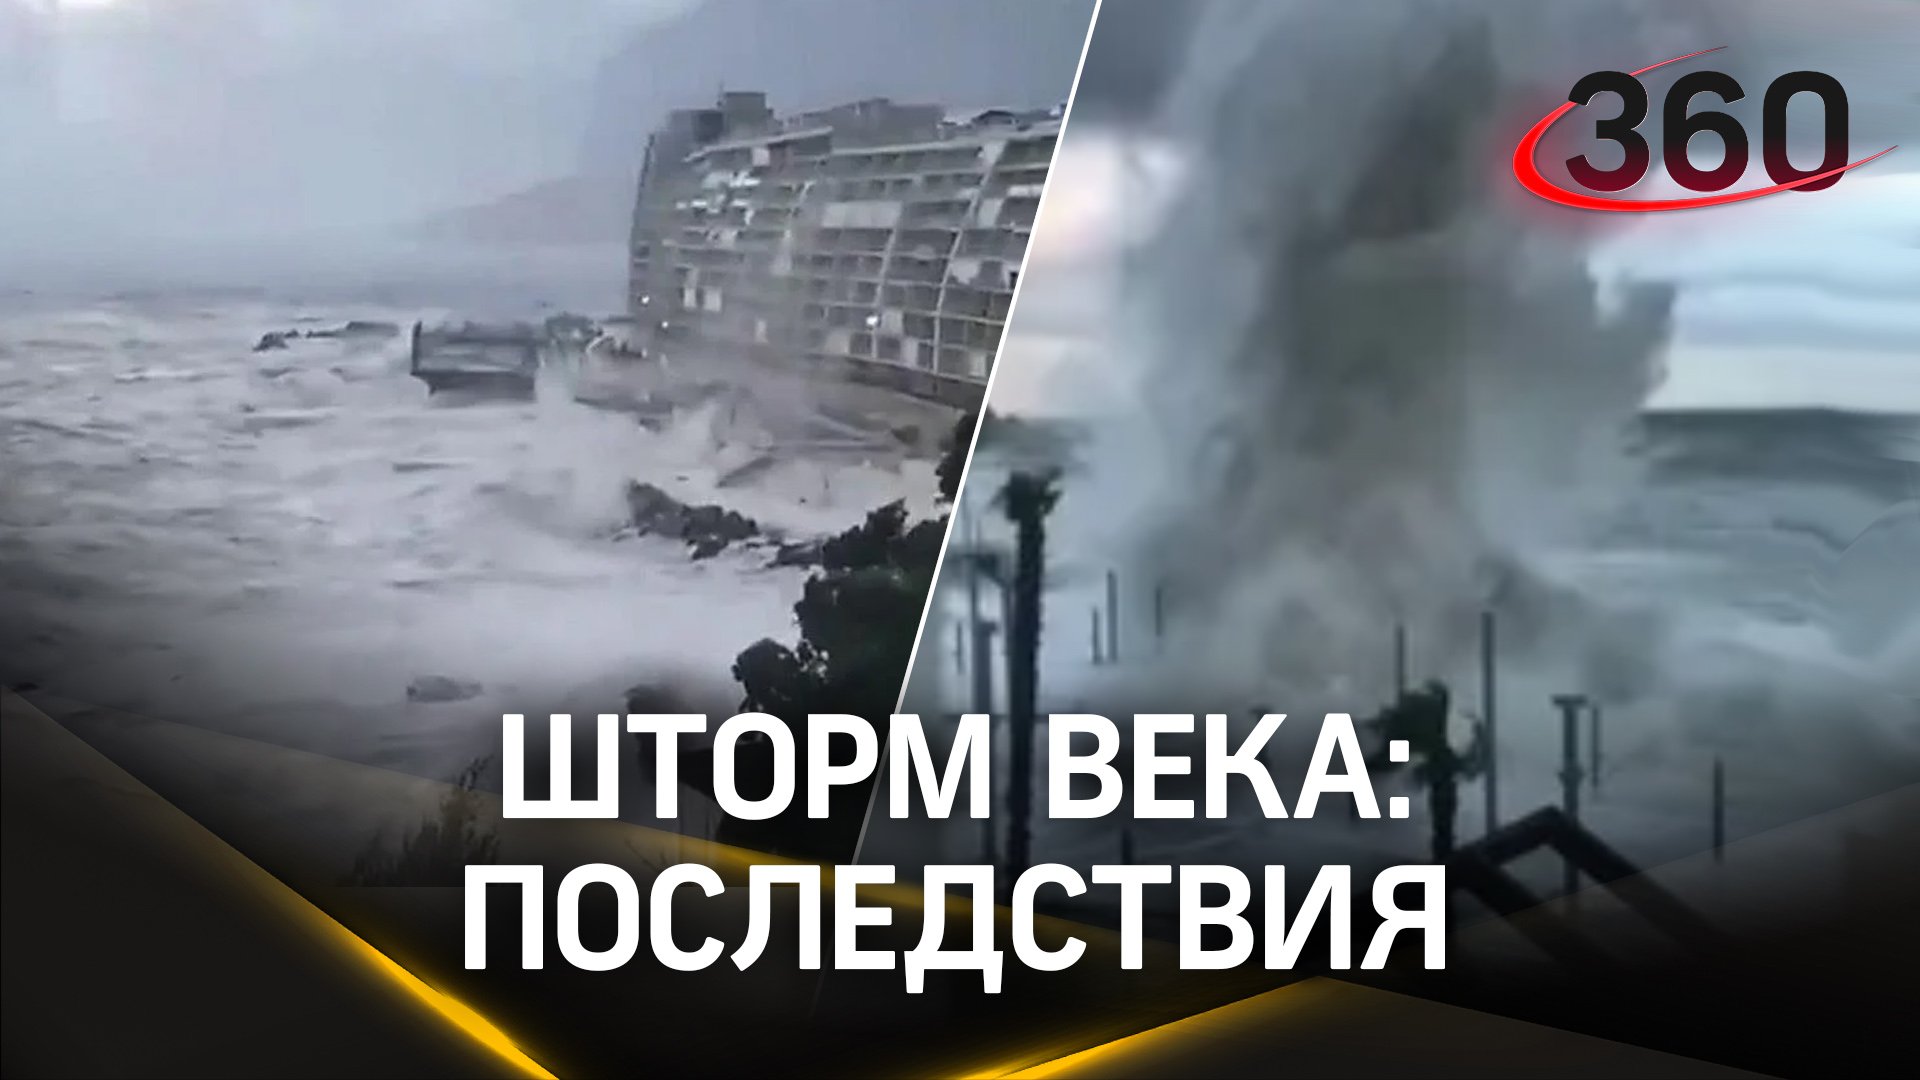 Тонущие поезда и рыбы, крики ужаса, 2 млн человек без света - итоги «шторма века» в Крыму и Сочи